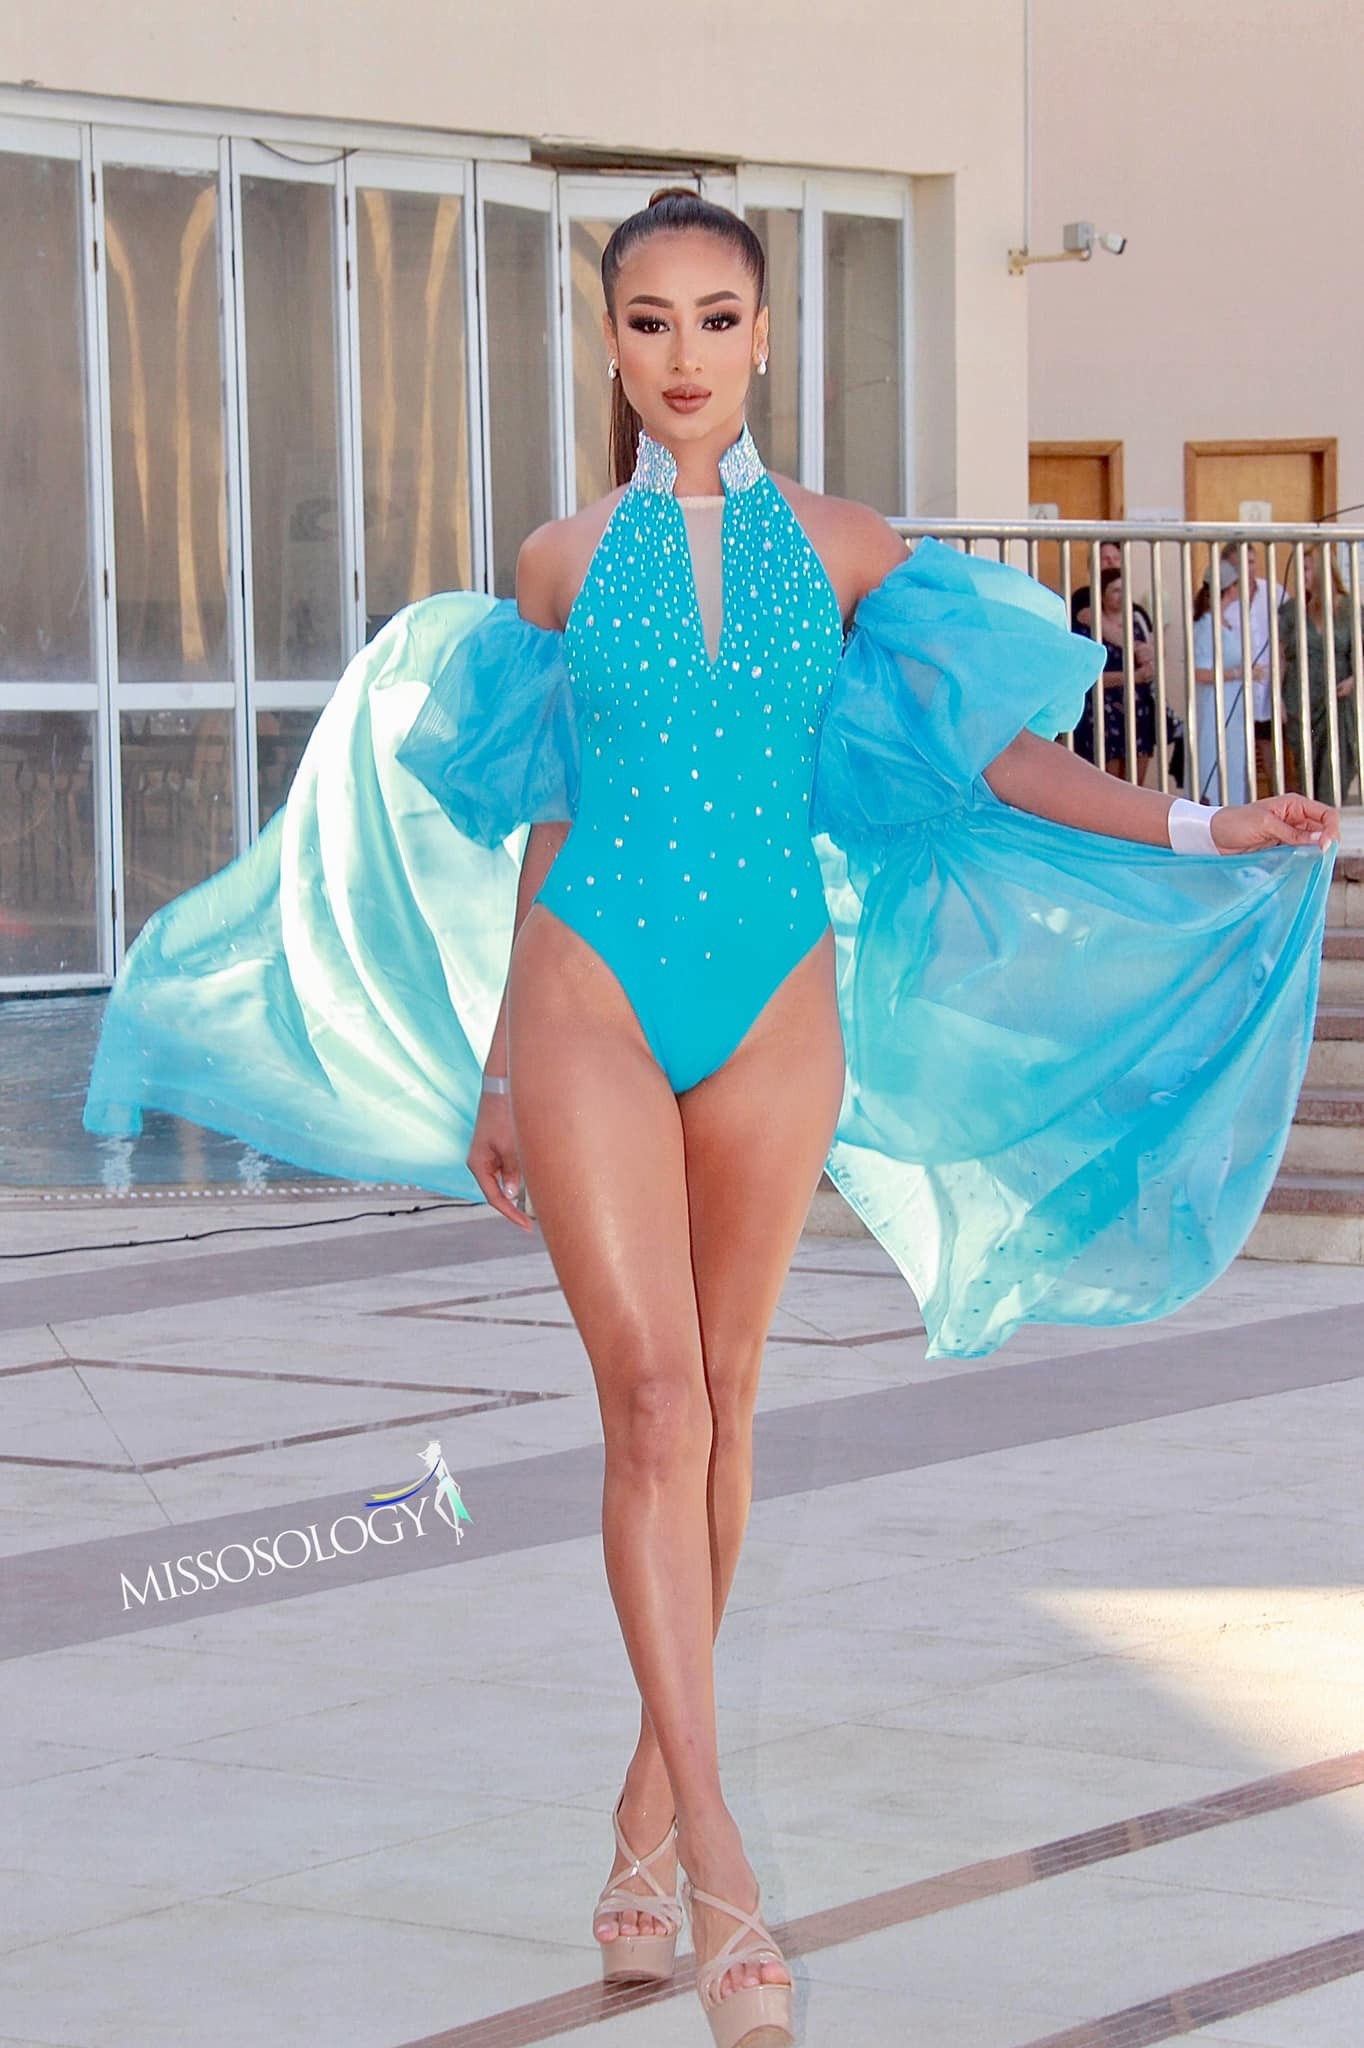 Phần thi trang phục biển của Hoa hậu Môi trường khiến khán giả thất vọng ảnh 5